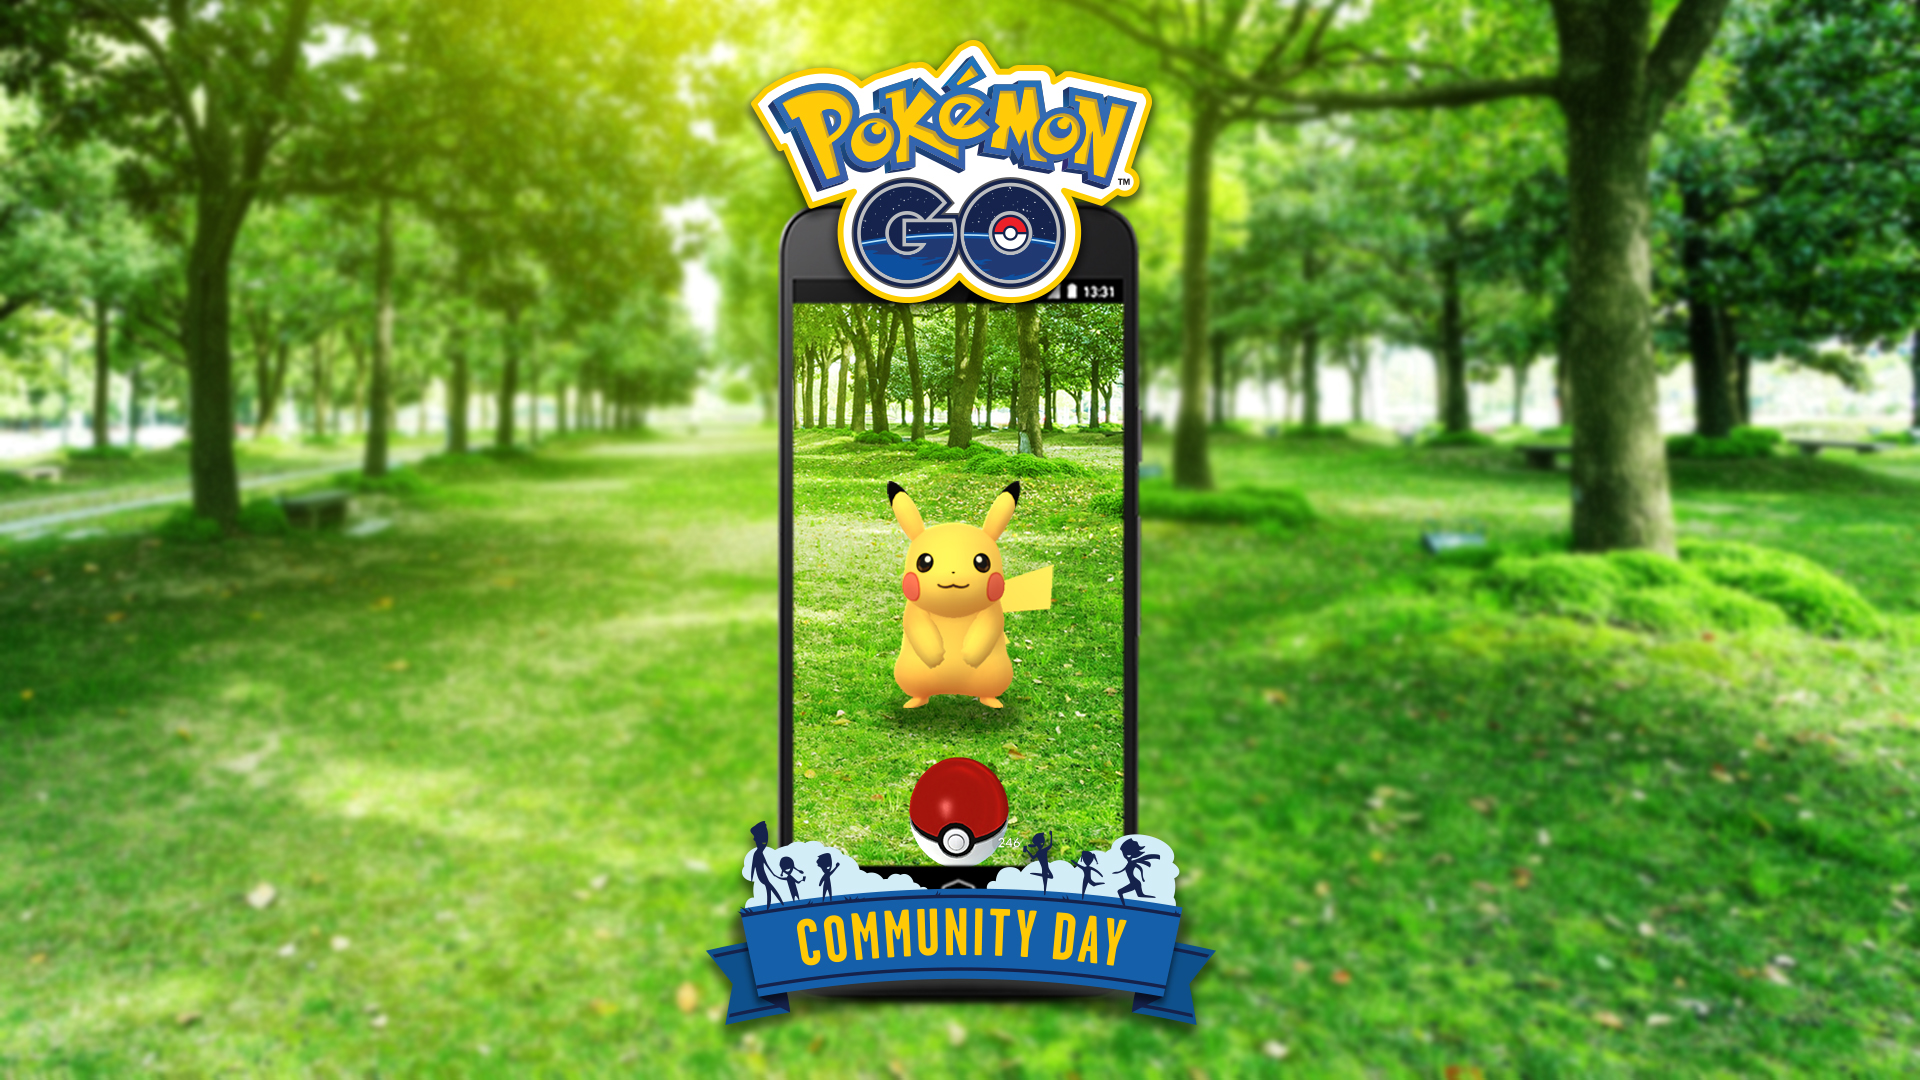 Pokémon Community Day